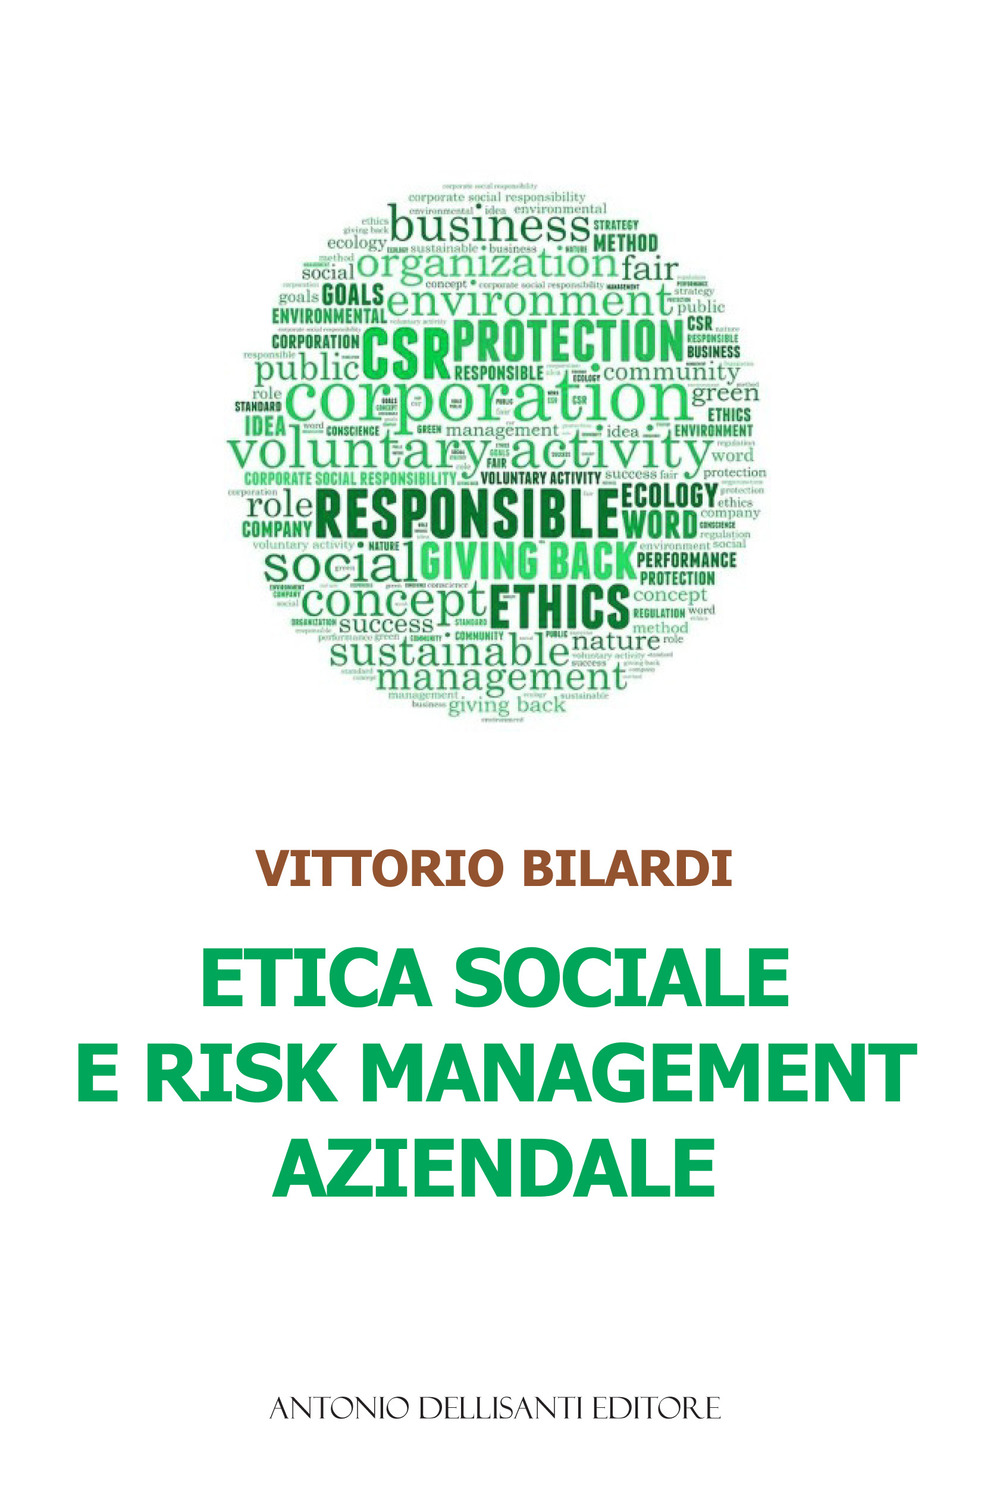 Libri Vittorio Bilardi - Etica Sociale E Risk Management Aziendale NUOVO SIGILLATO SUBITO DISPONIBILE